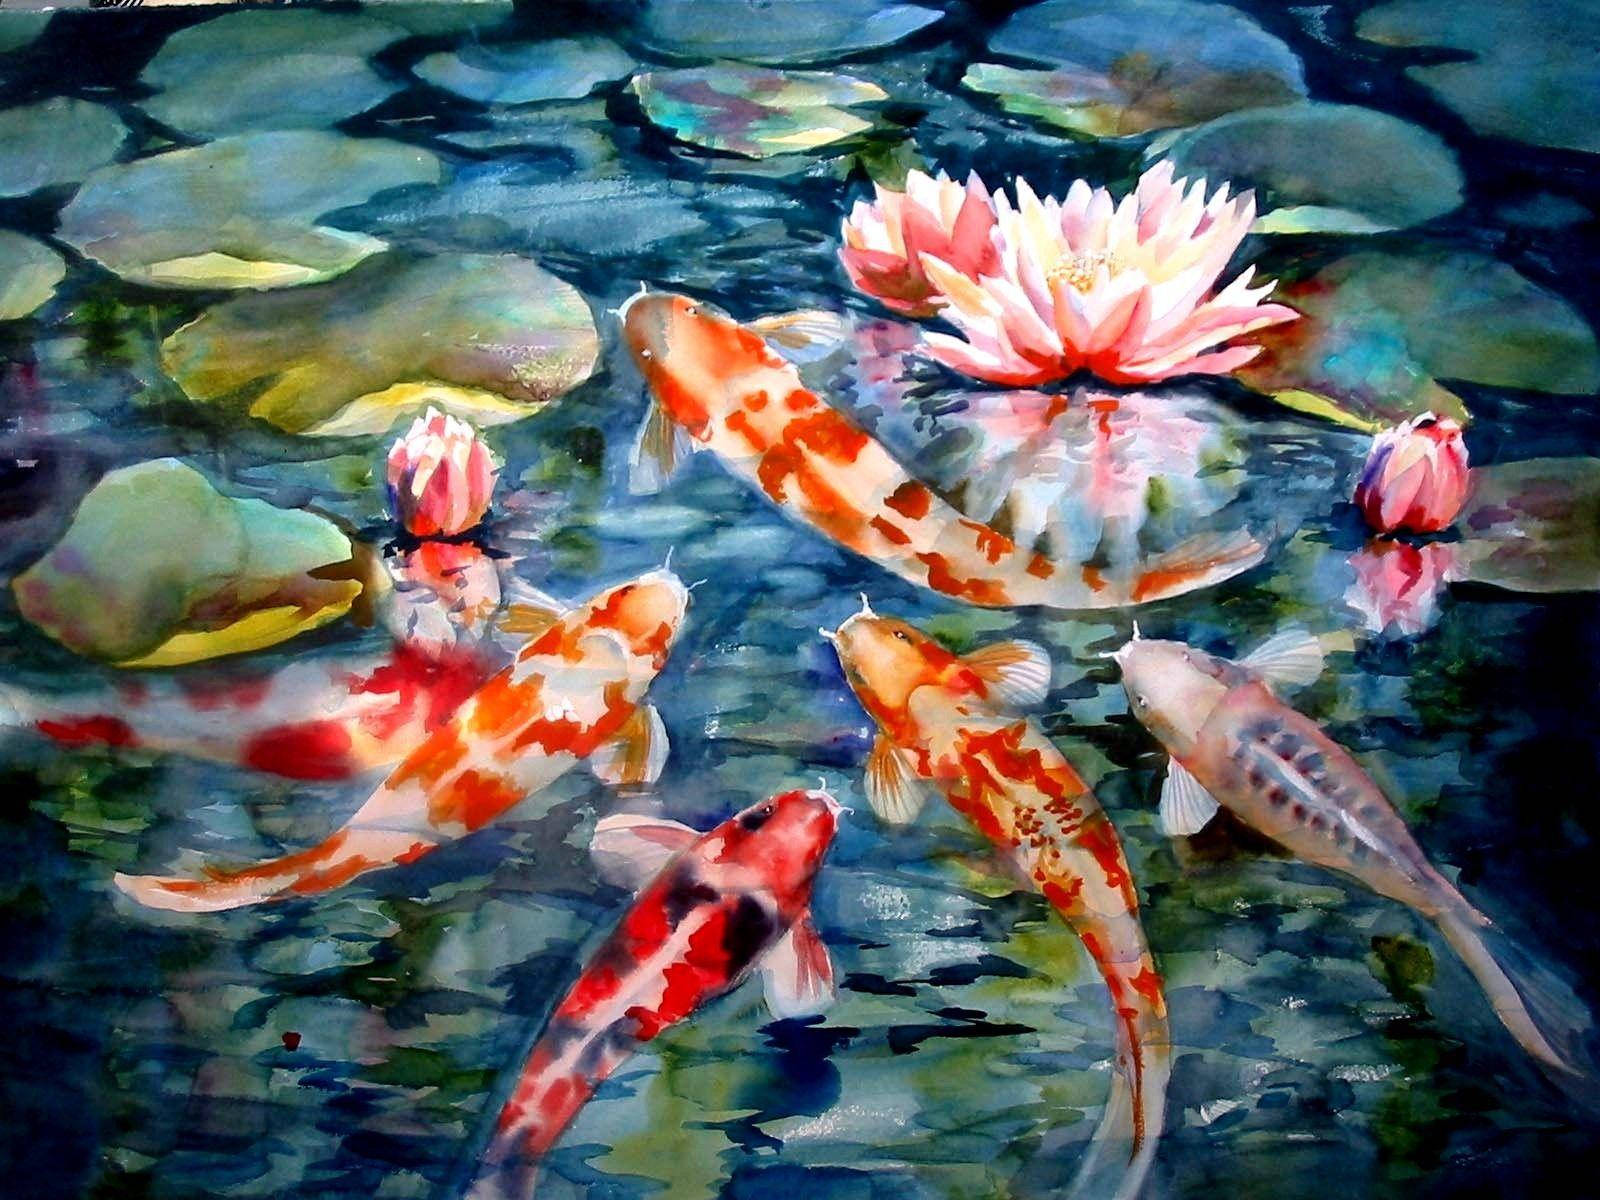 Koi Fish Among Lilies Painting Wallpaper